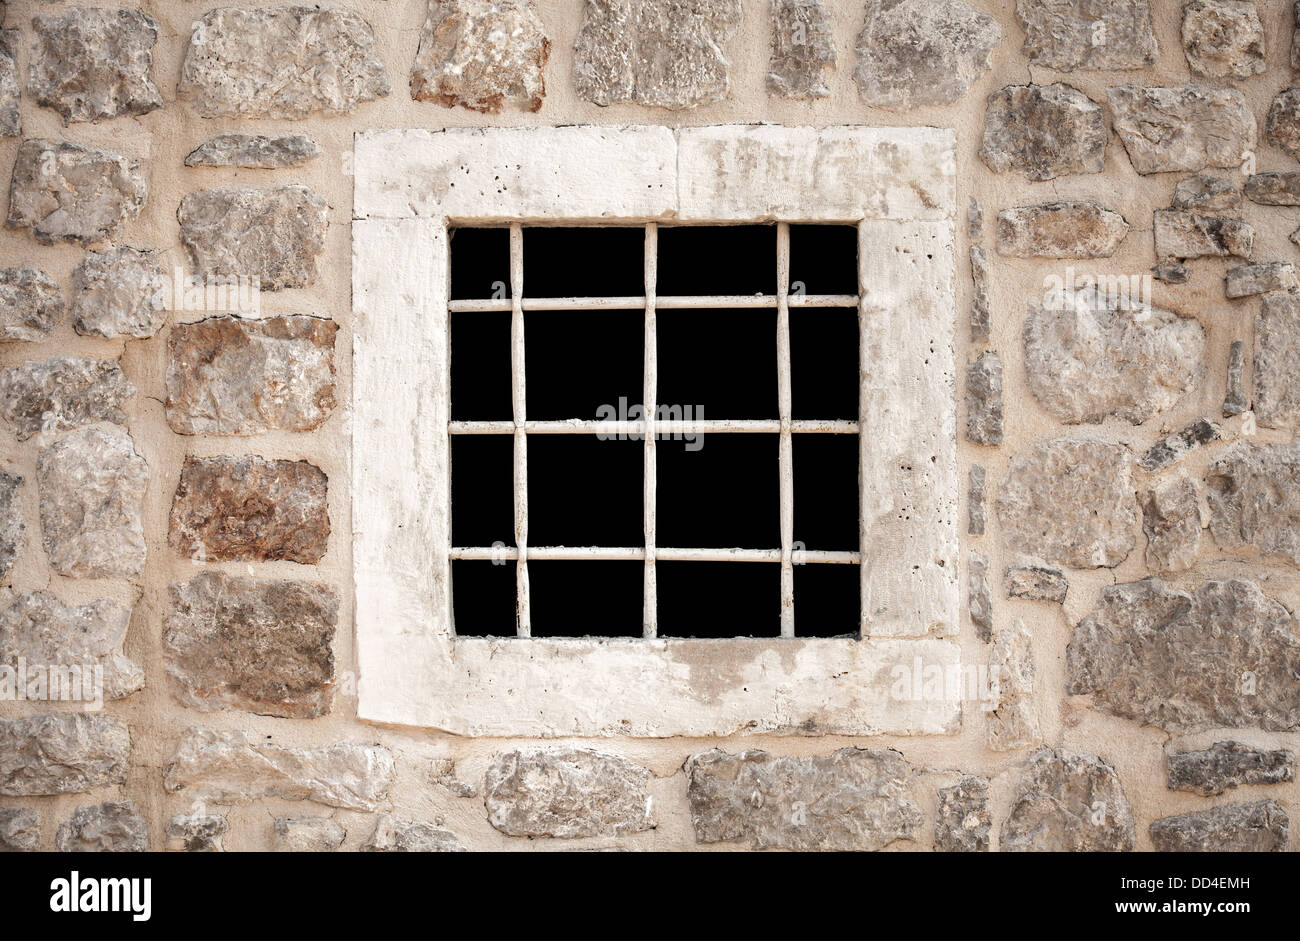 antica-prigione-di-pietra-a-parete-in-metallo-con-barre-di-finestra-dd4emh